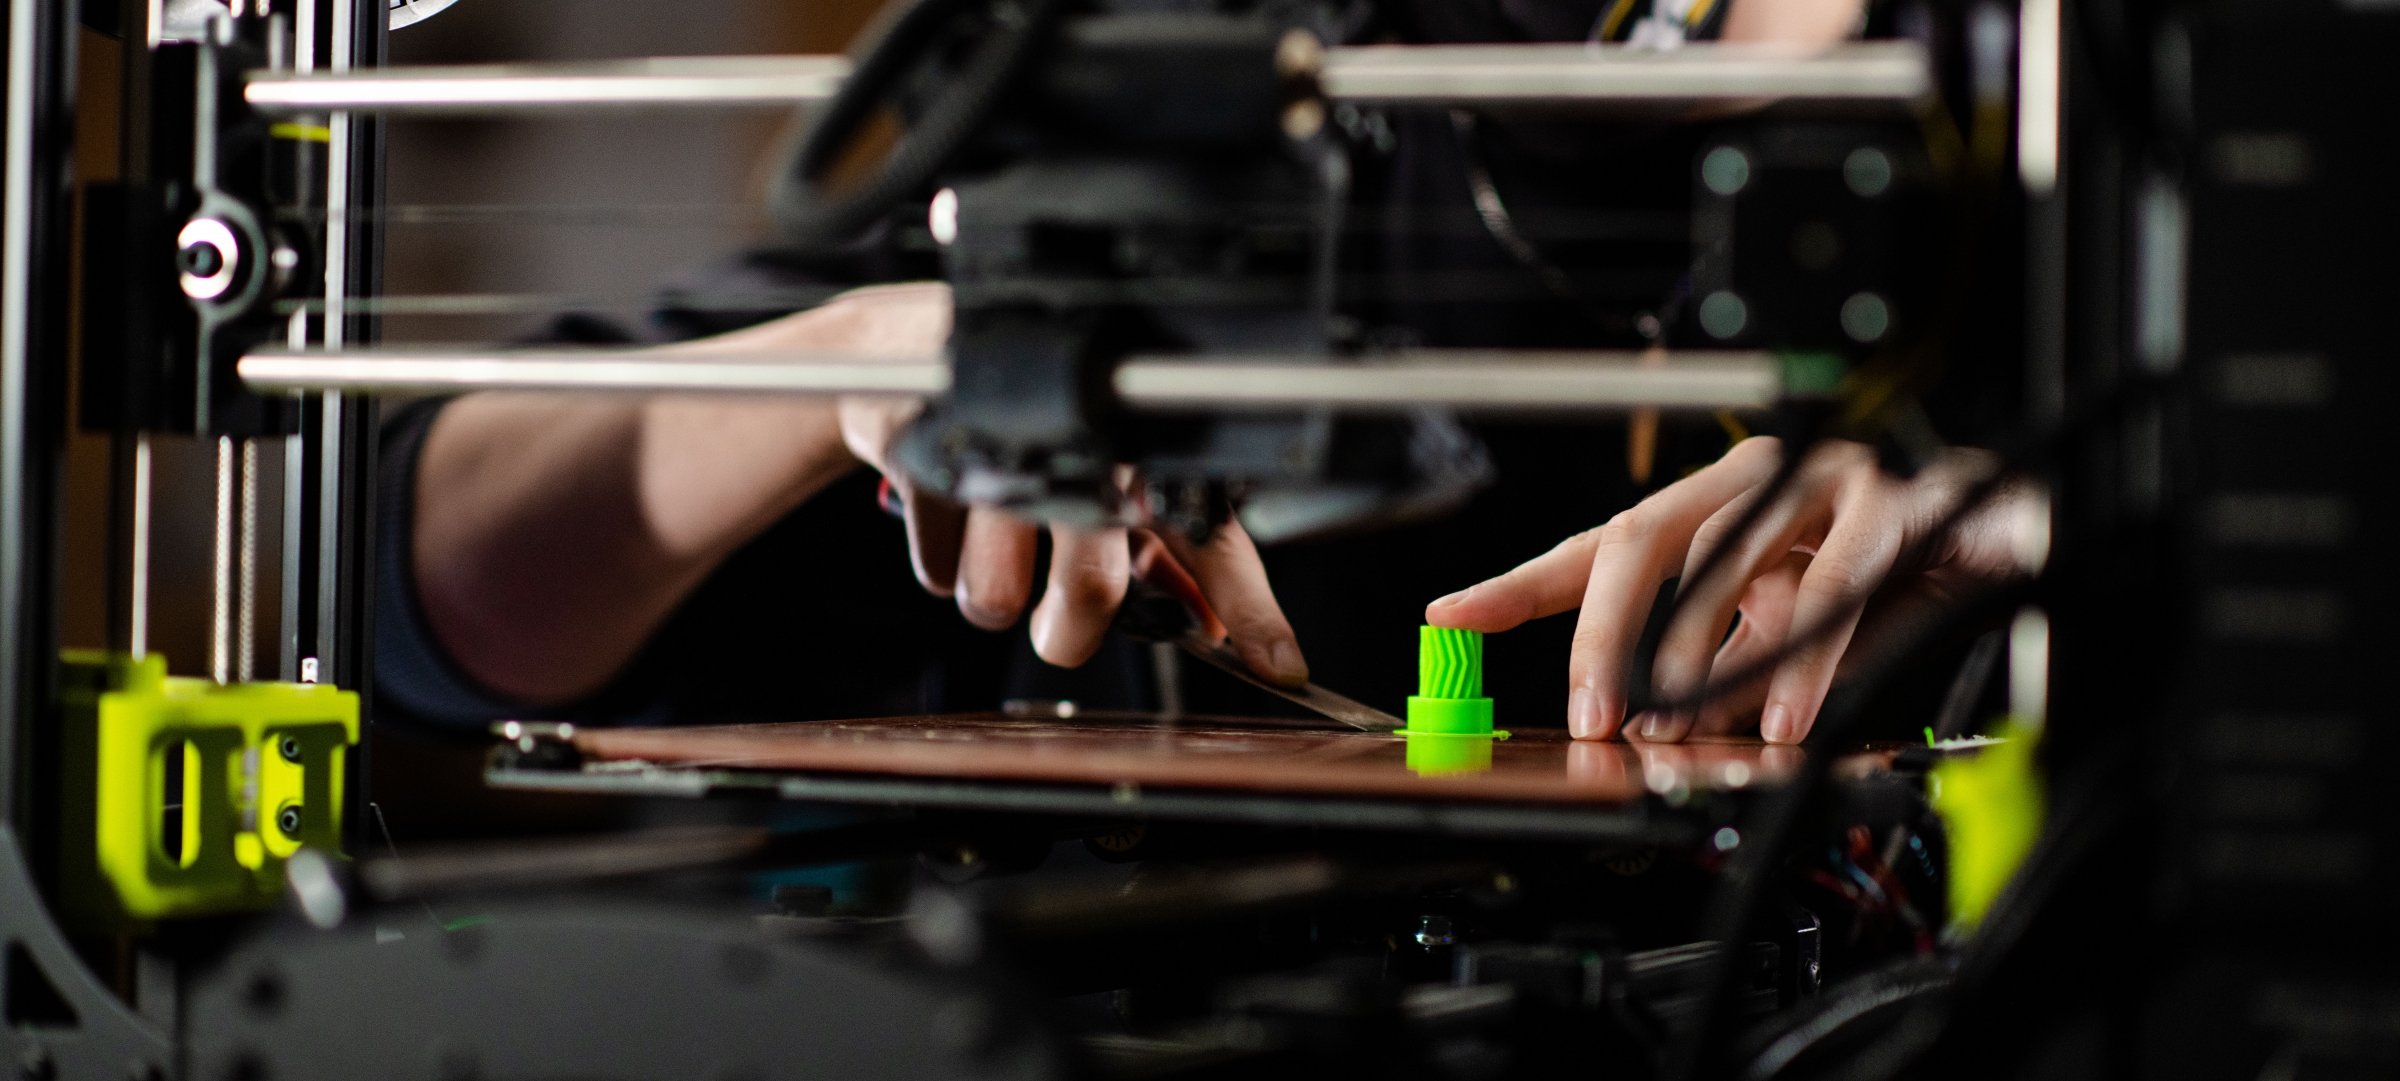 3D printed intem being taken off the printer platform